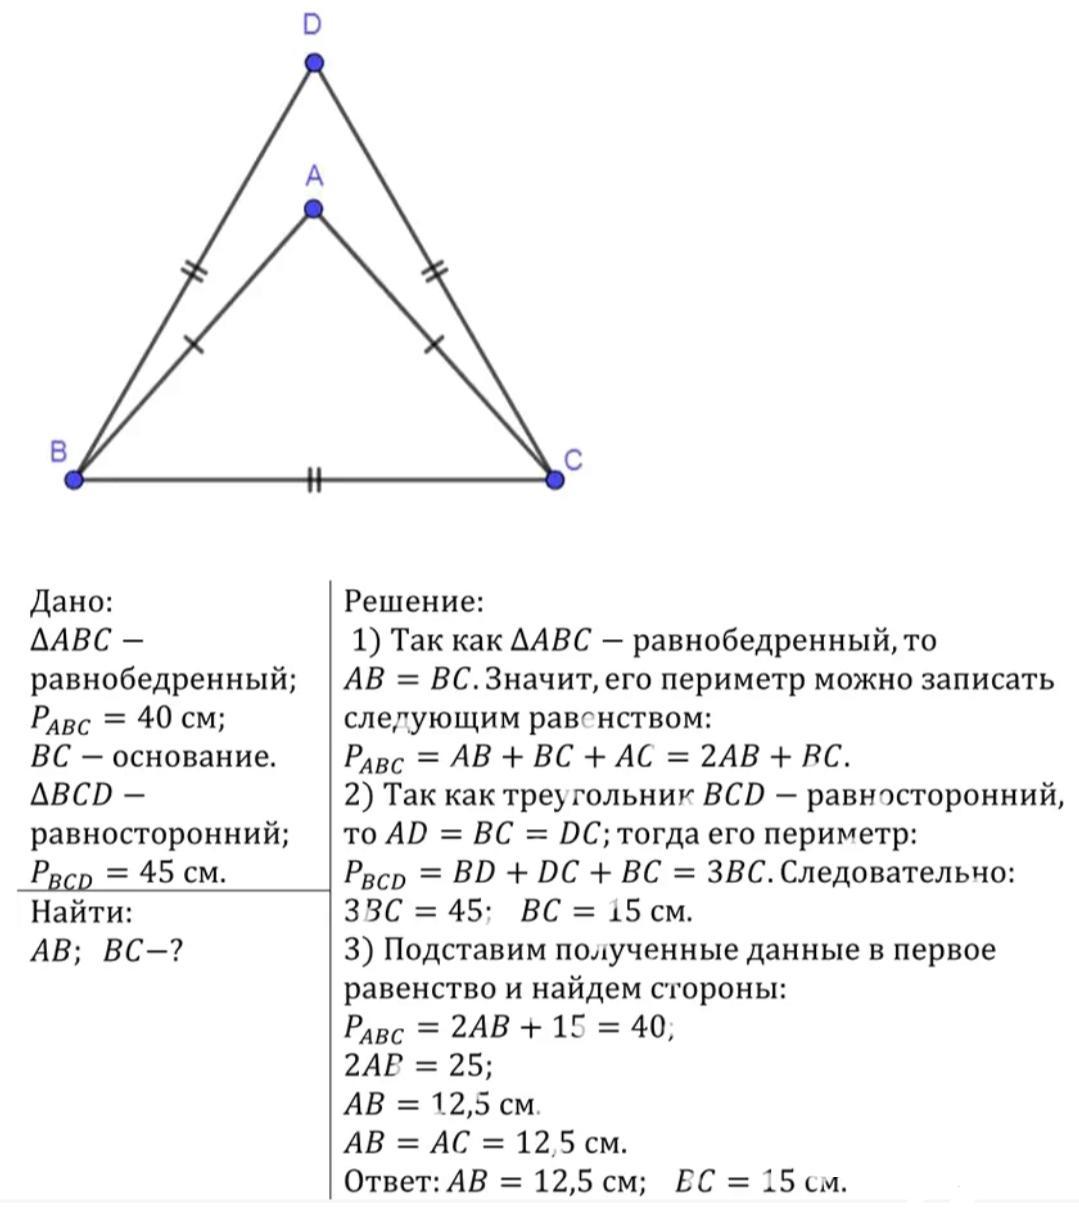 Периметр равнобедренного треугольника равен 34 см найдите. Периметр равнобедренного треугольника АВС С основанием. Периметр равнобедренного треугольника с основанием а. Периметр равнобедренного треугольника АВС. Периметр равнобедренного треугольника АВС С основанием вс равен 40 см.